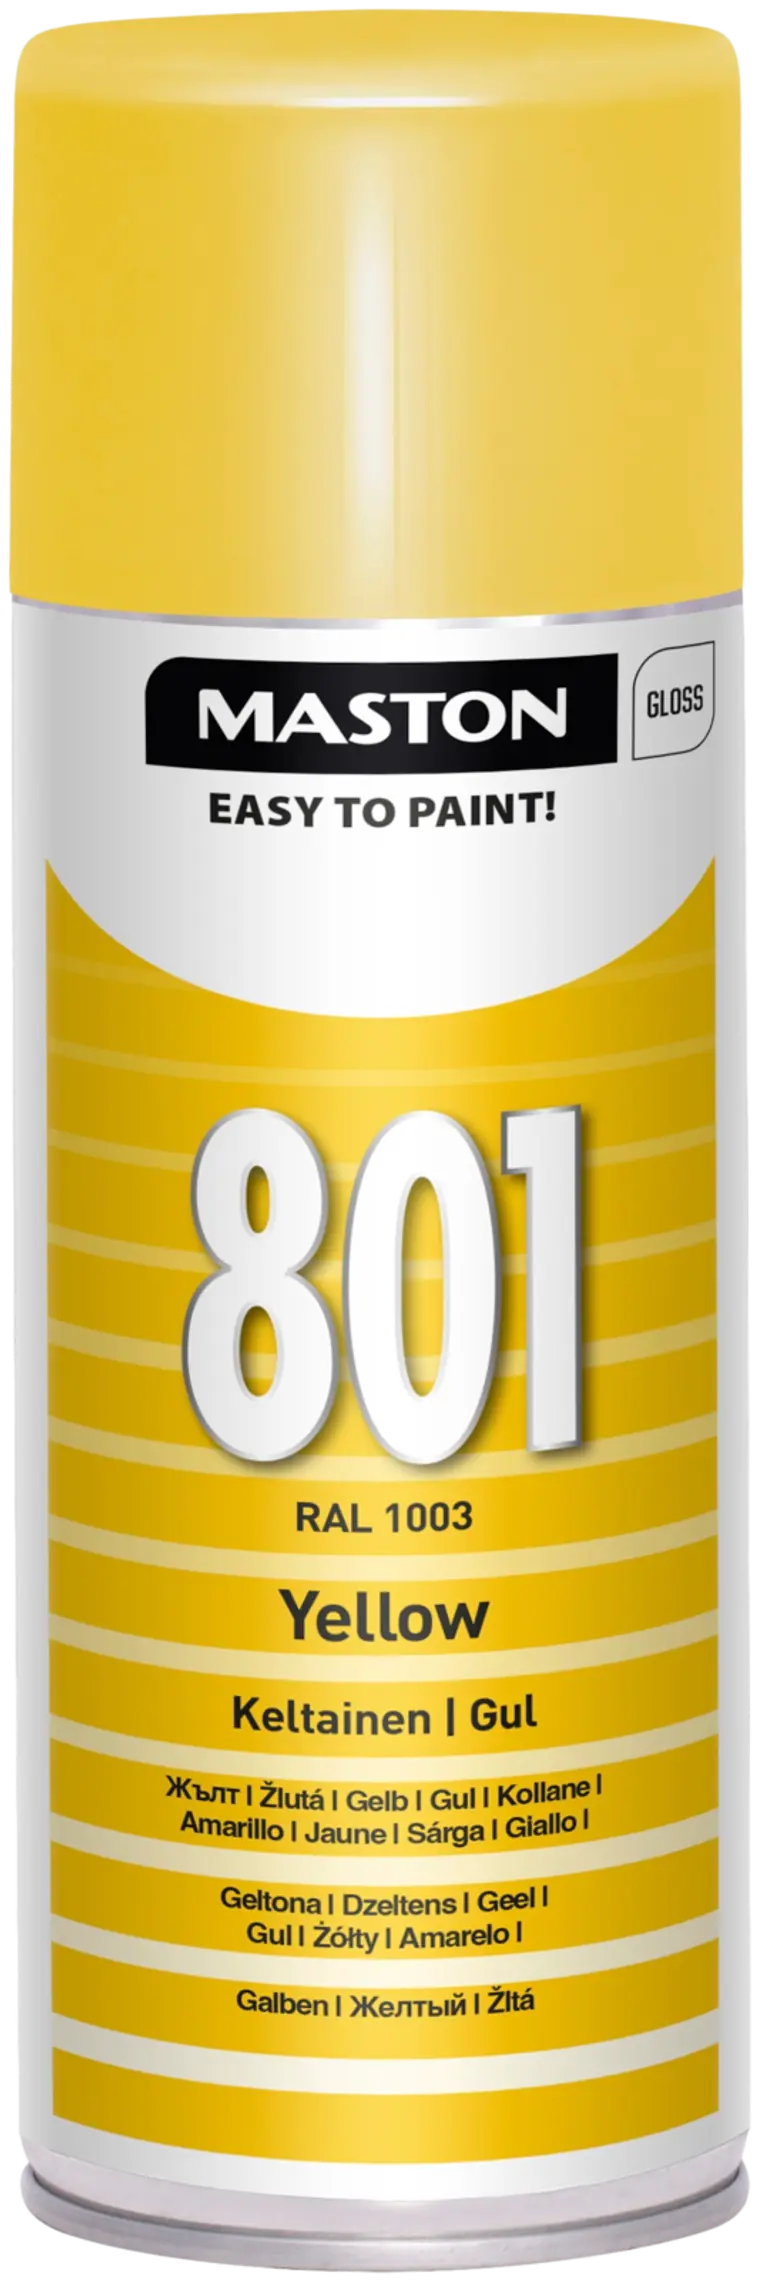 Maston spraymaali keltainen 801 400ml RAL 1003